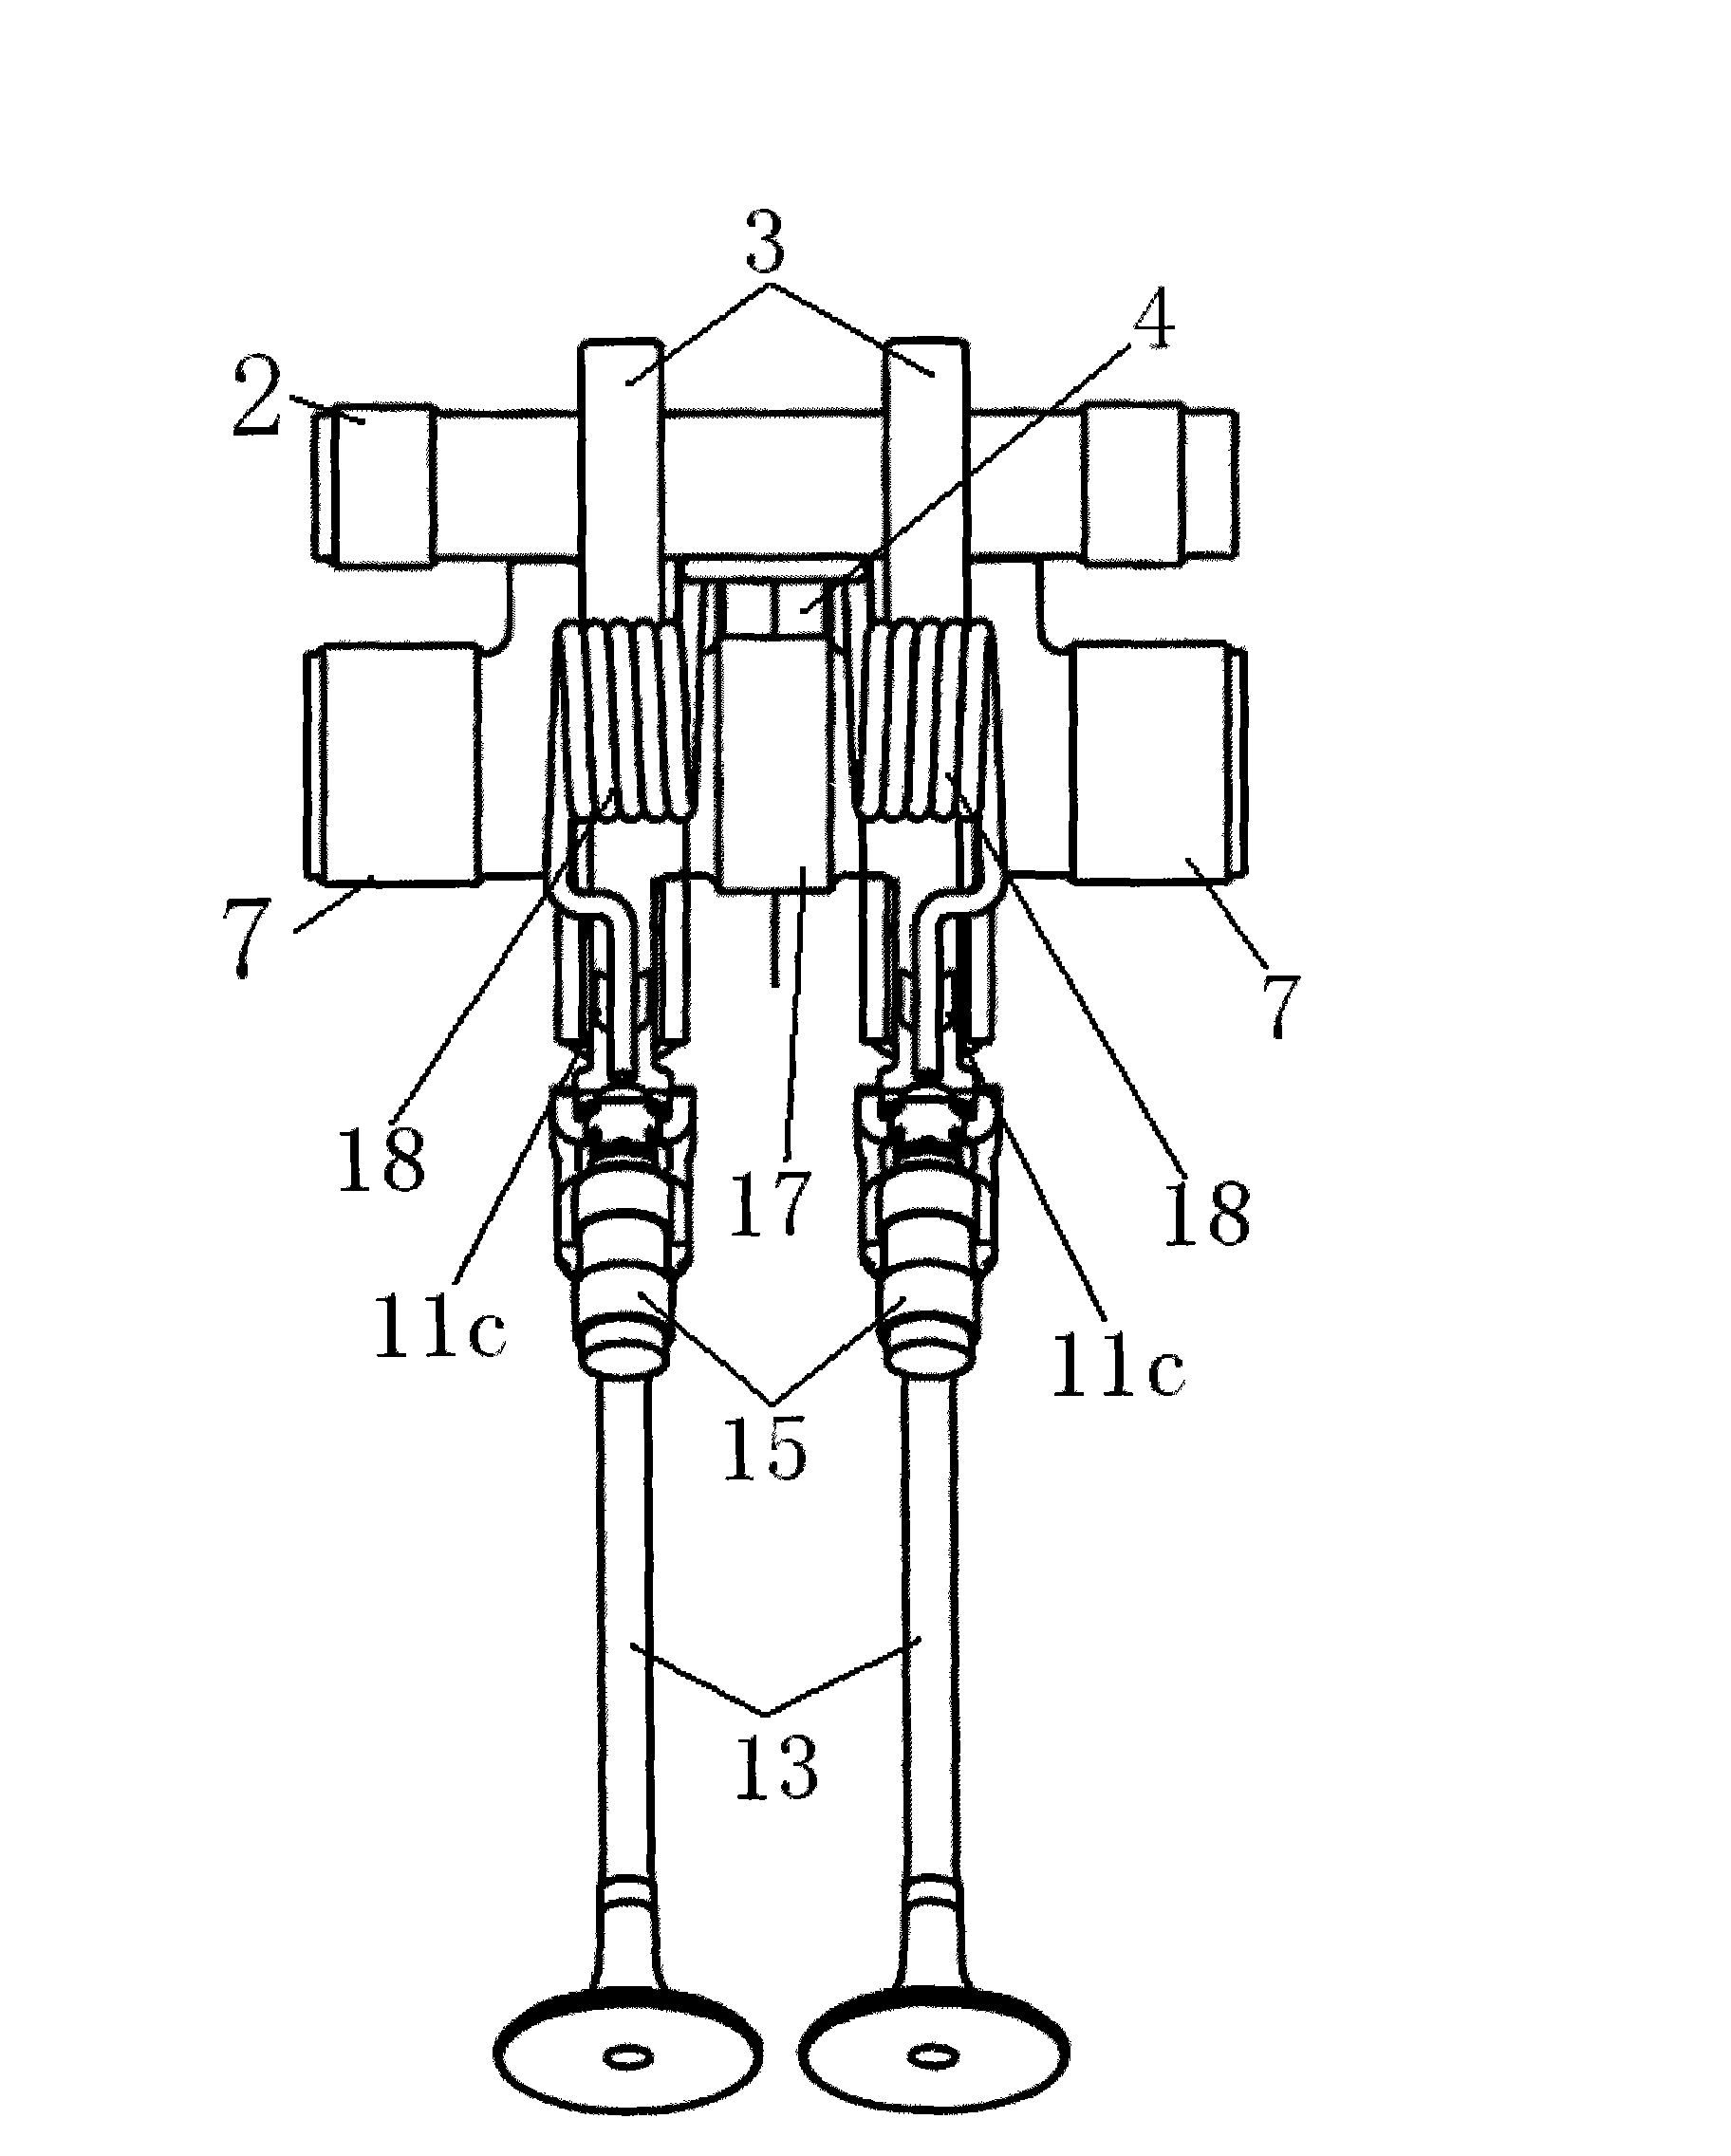 Novel stepless variable valve lift mechanism